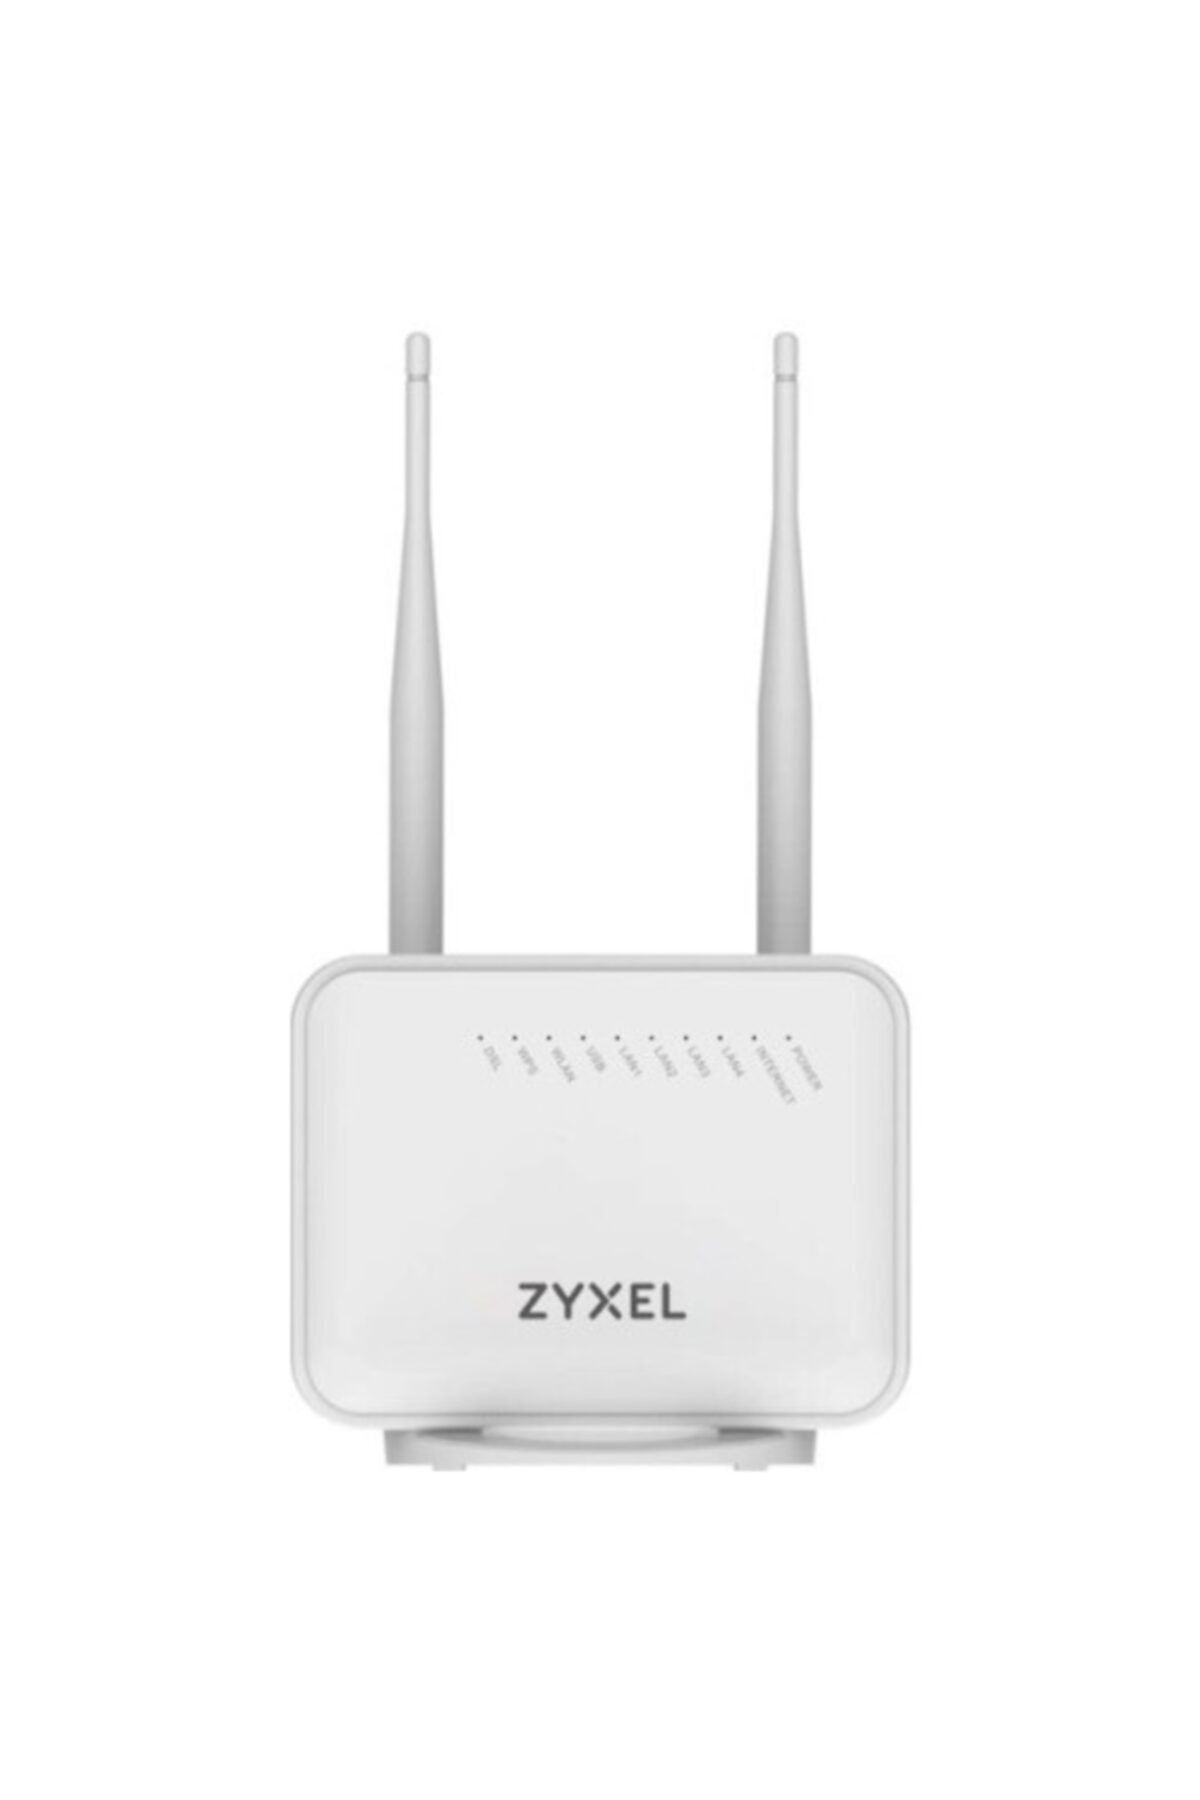 Zyxel Vmg1312 T20b 300mbps N300 2.4ghz Vdsl Fiber Modem Router